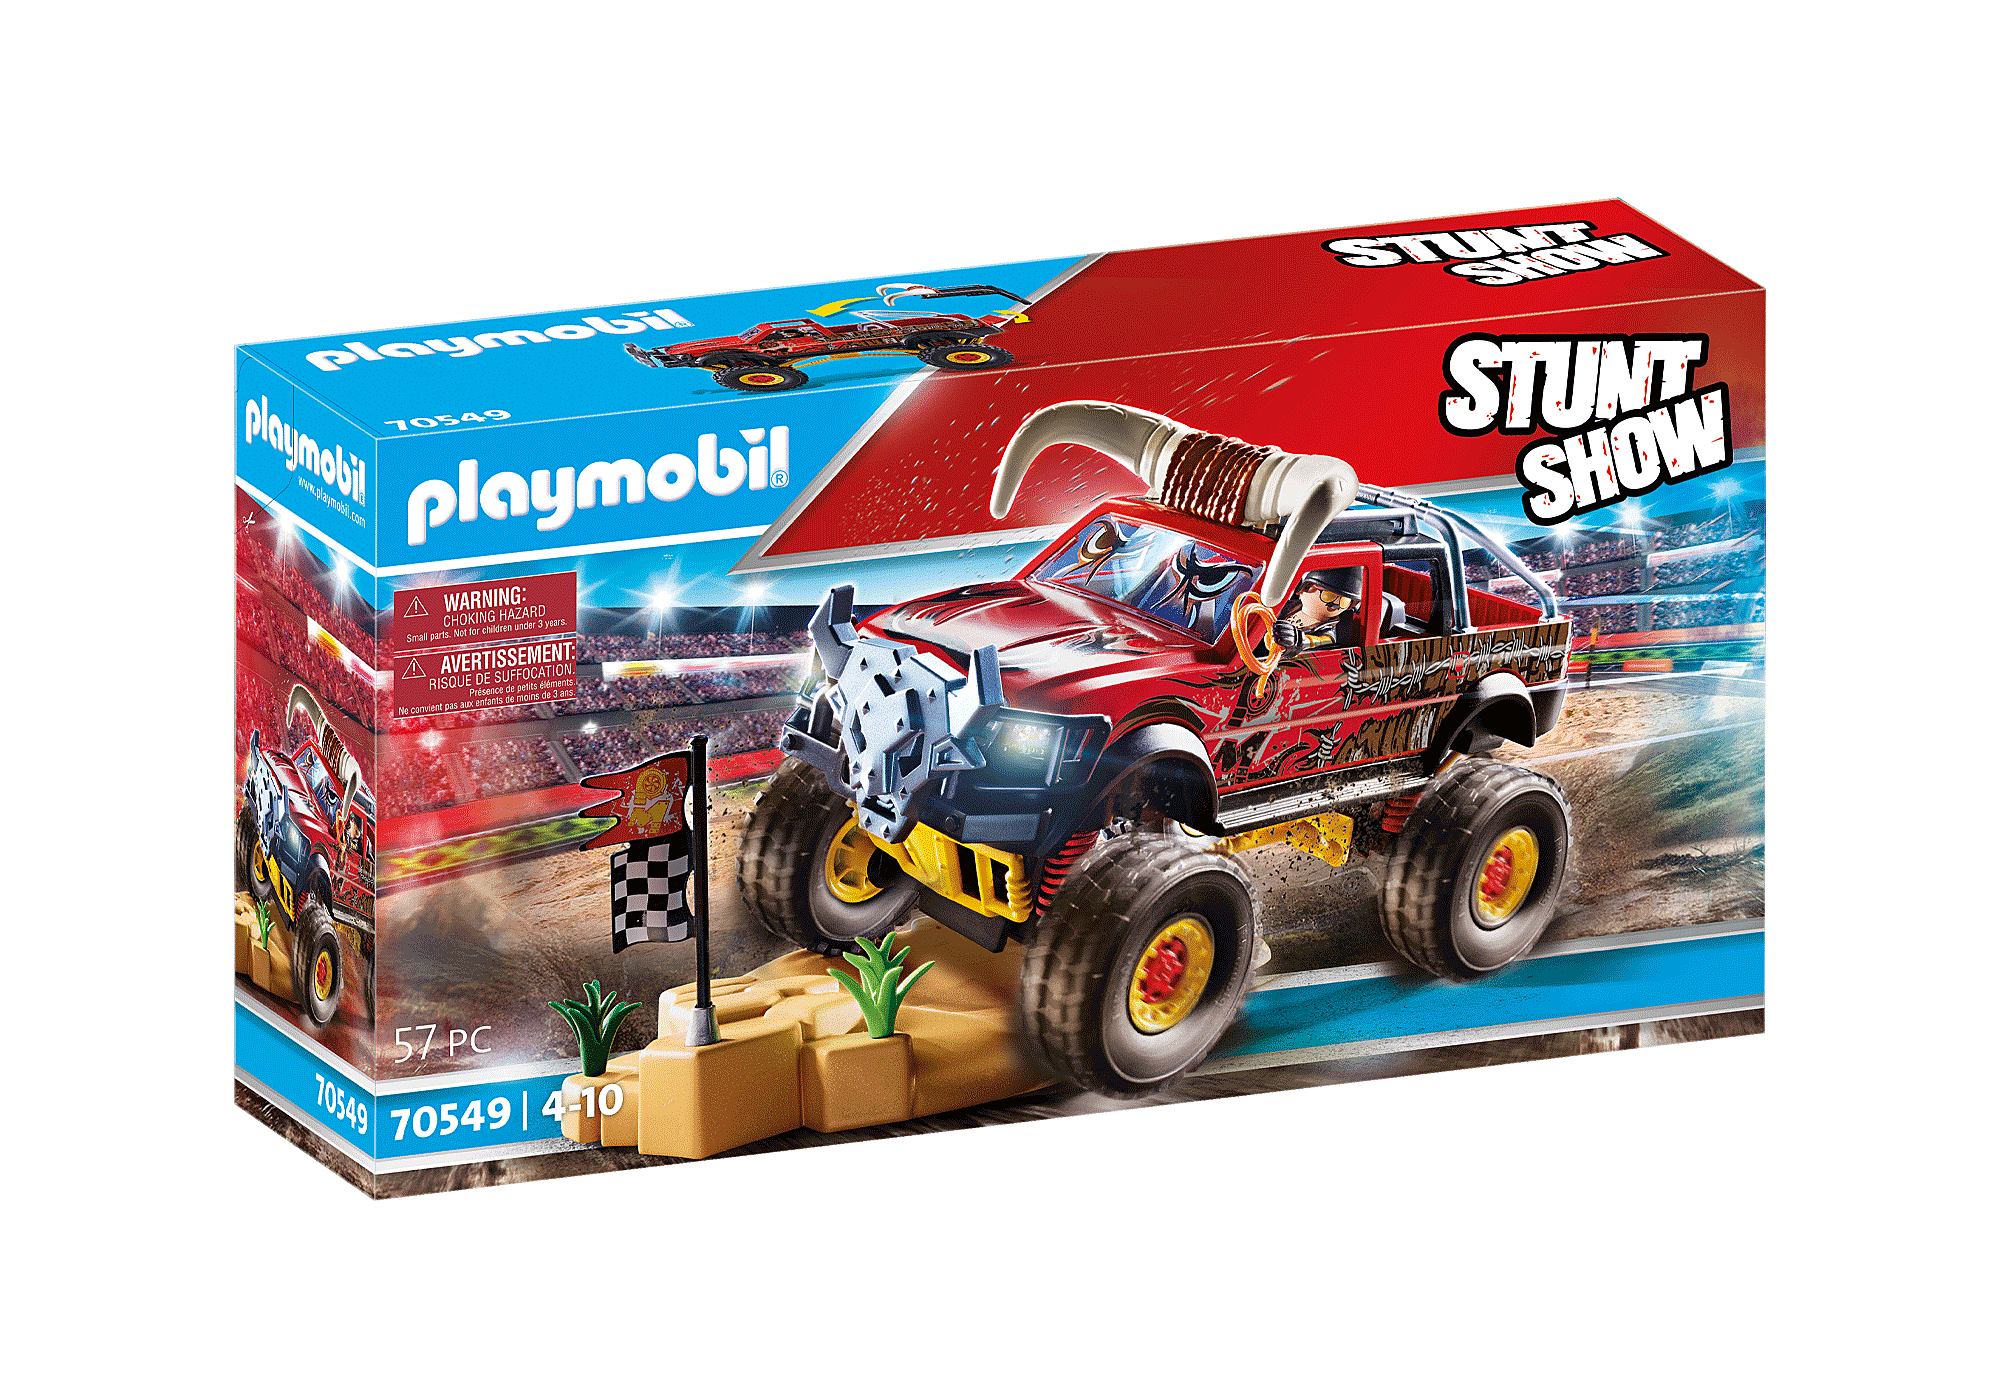 Stunt Show Bull Monster Truck - 70549